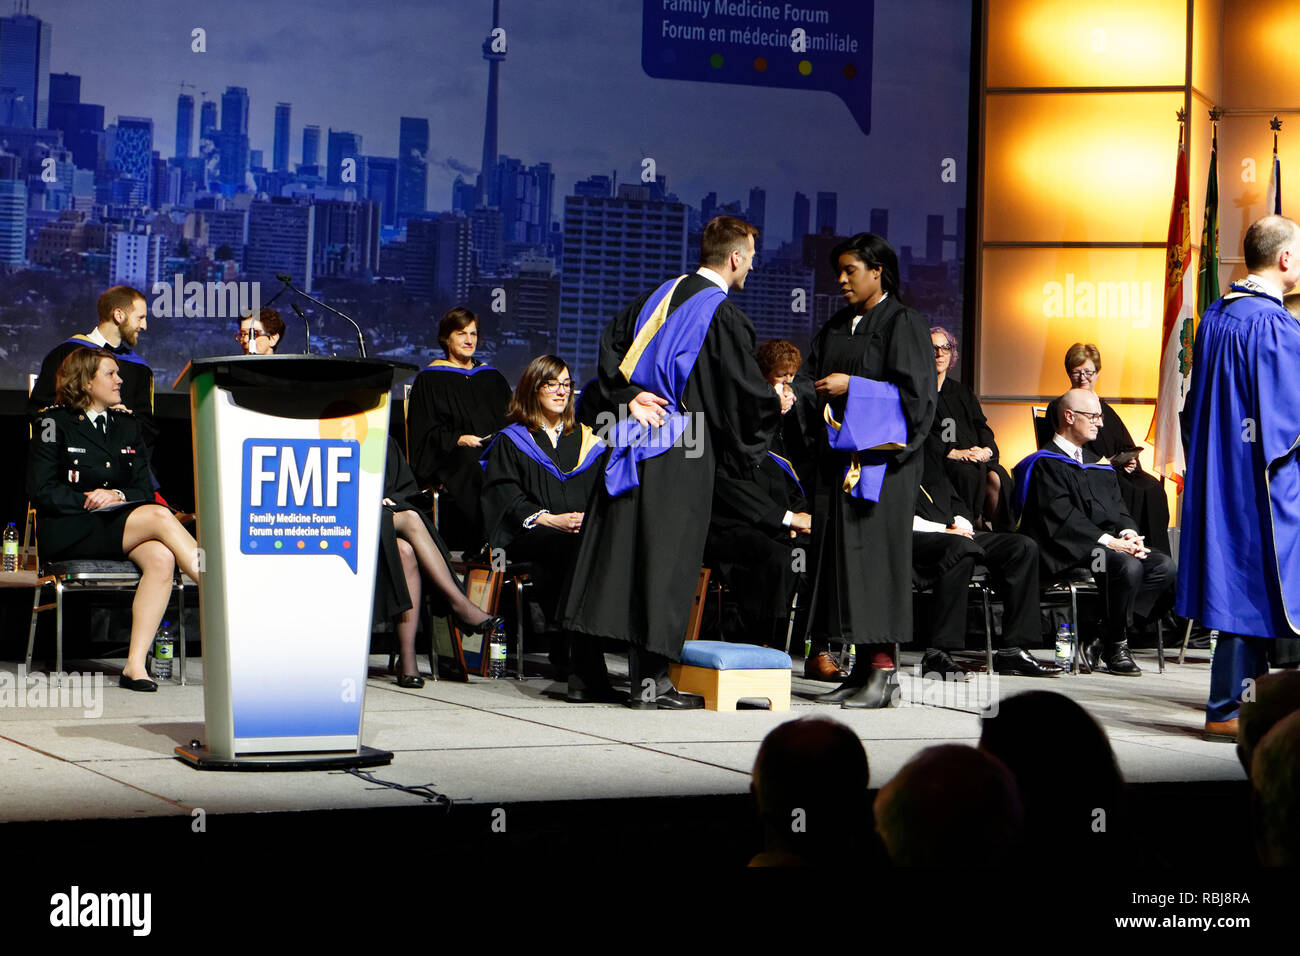 Les étudiants de médecine diplômés de recevoir leurs certificats de médecin au Forum en médecine familiale à Toronto, novembre 2018 Banque D'Images